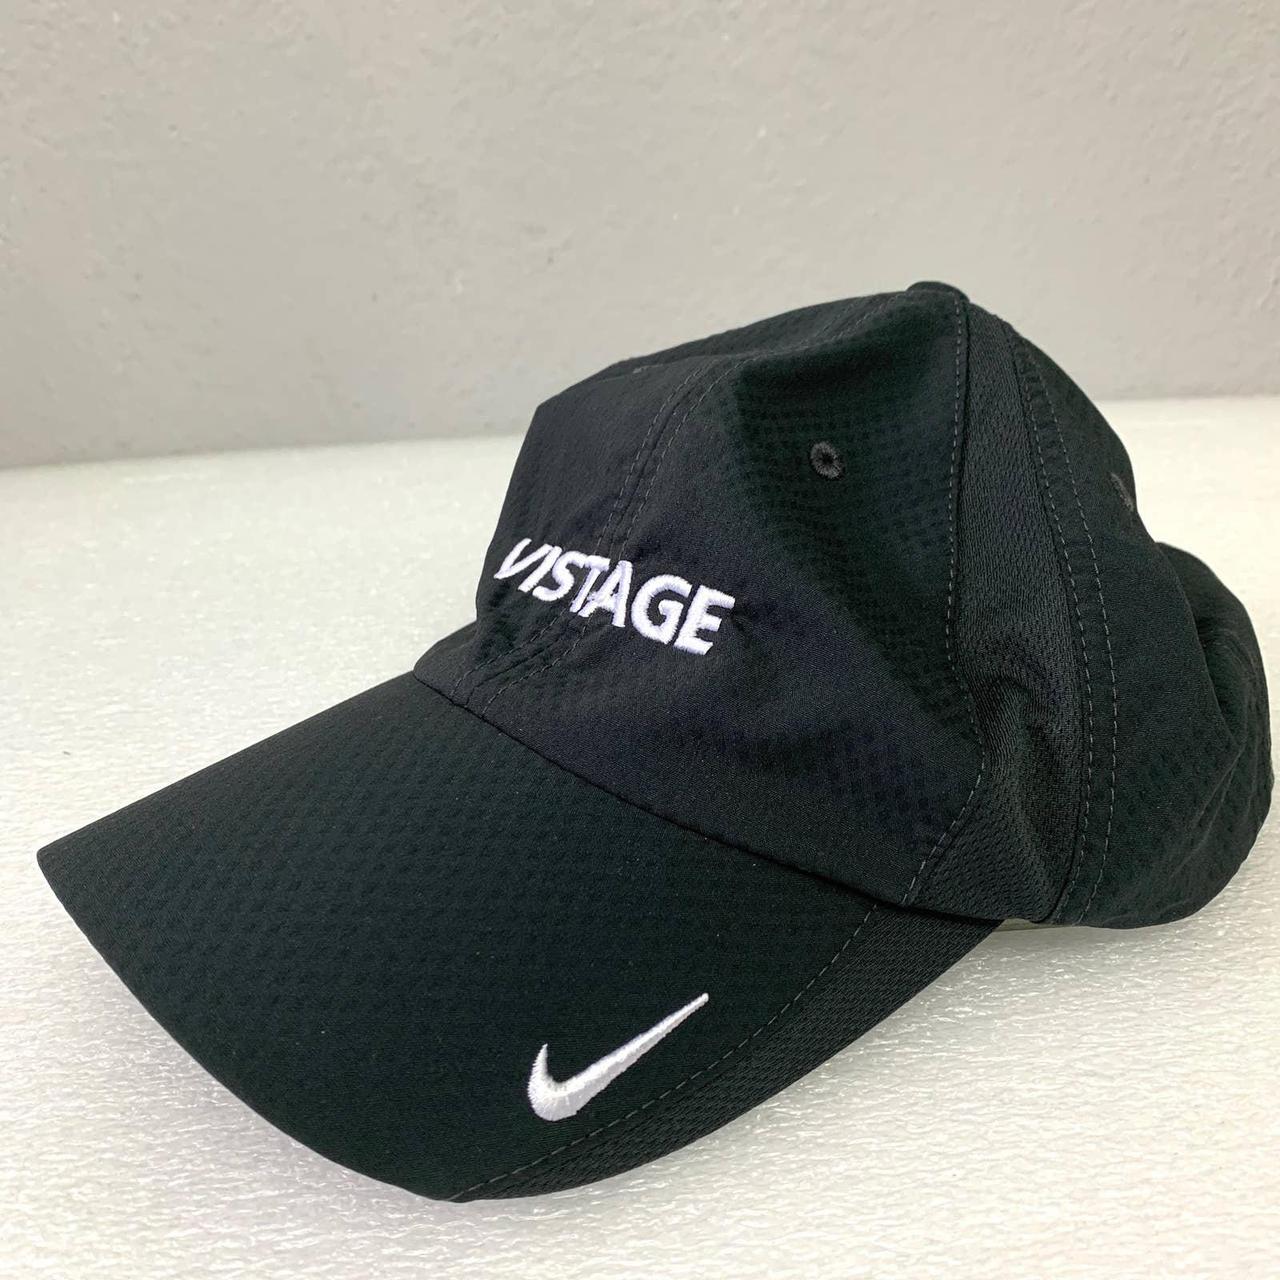 Nike Sportswear Heritage 86 Baseball Cap in Solid... - Depop